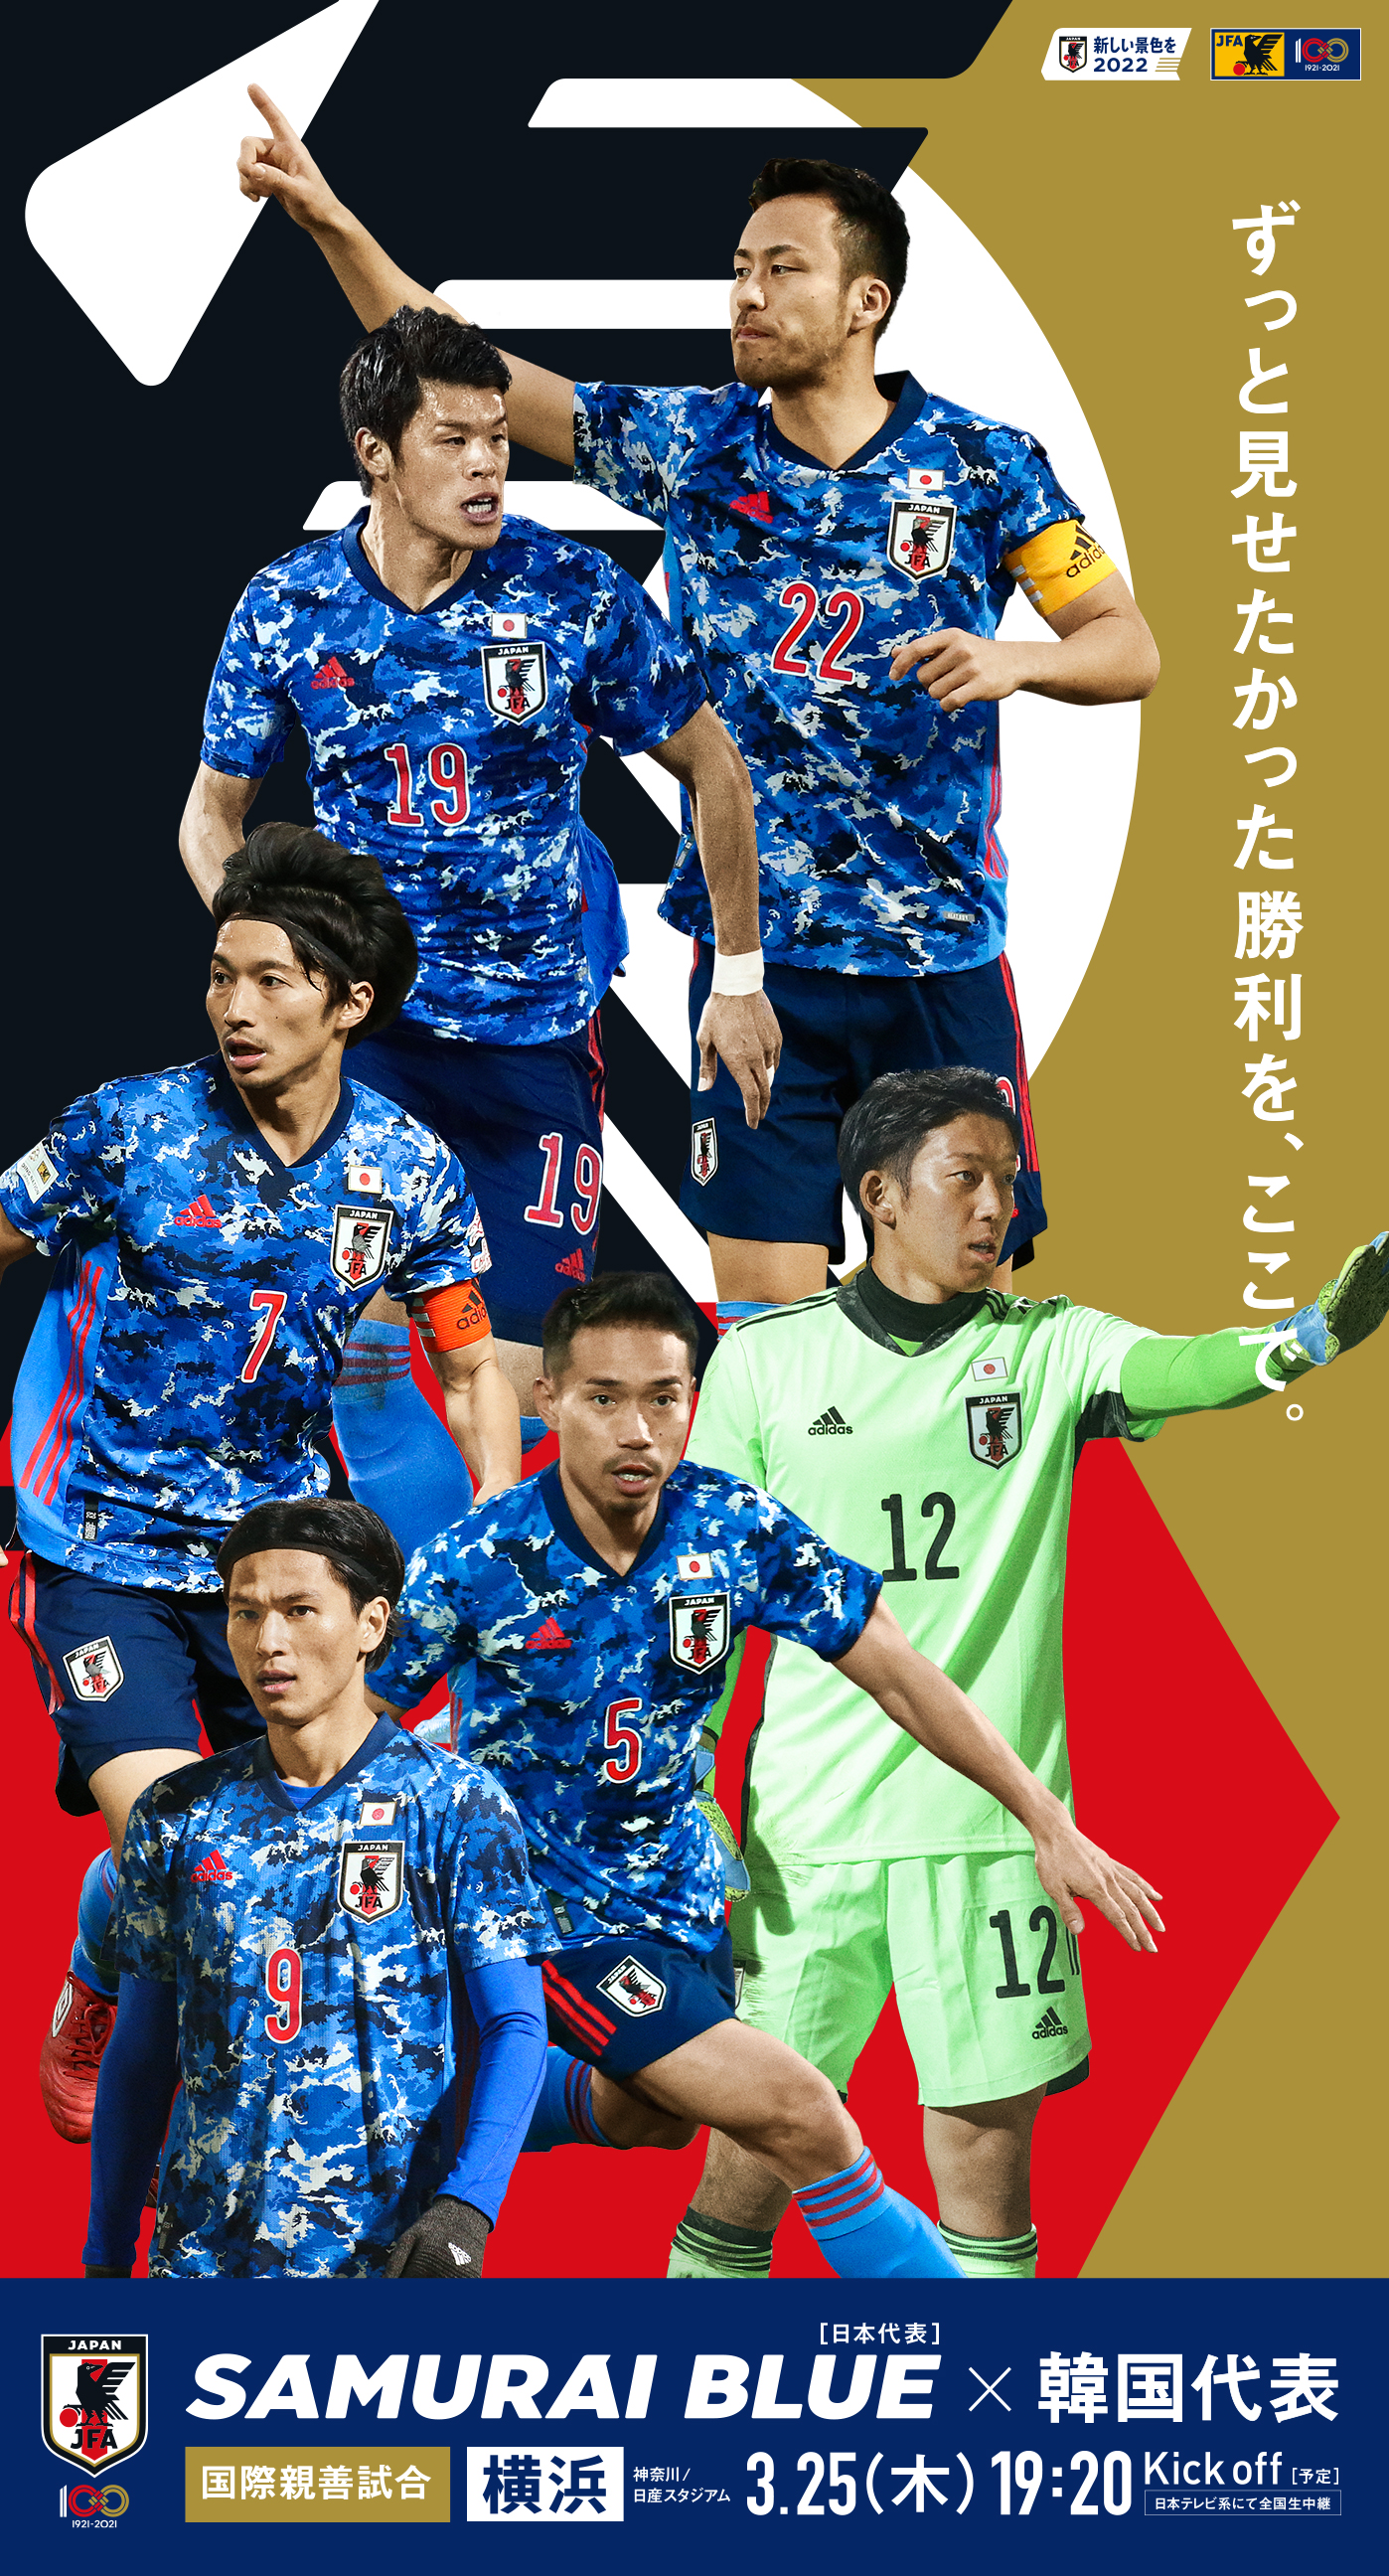 壁紙ダウンロード 国際親善試合 Top Samurai Blue 日本代表 Jfa 日本サッカー協会